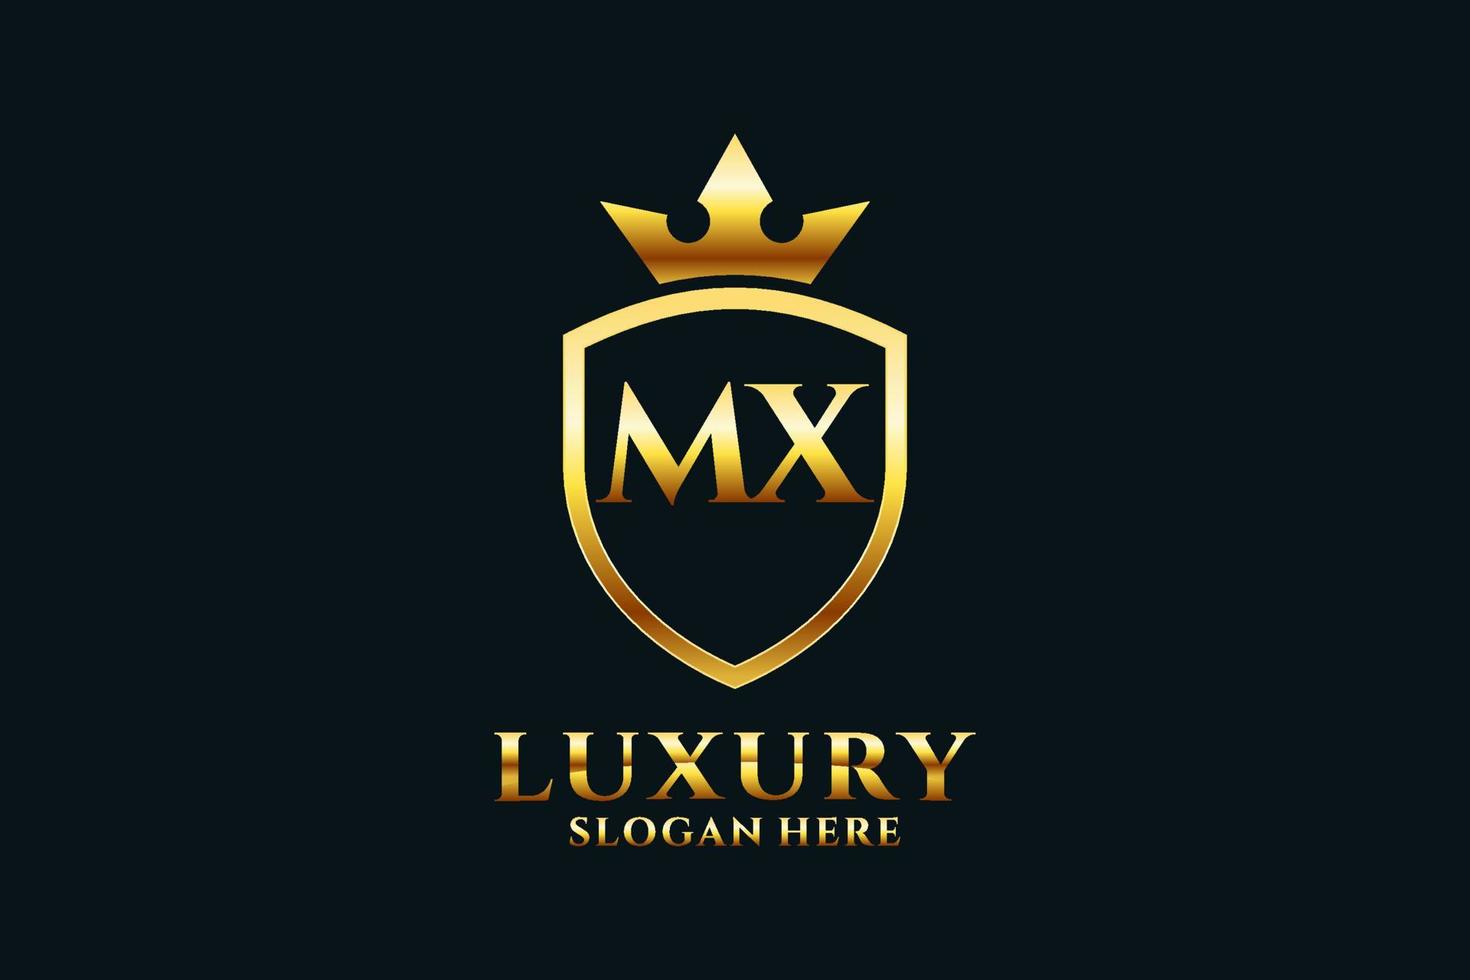 logotipo de monograma de lujo inicial mx elegante o plantilla de placa con pergaminos y corona real - perfecto para proyectos de marca de lujo vector